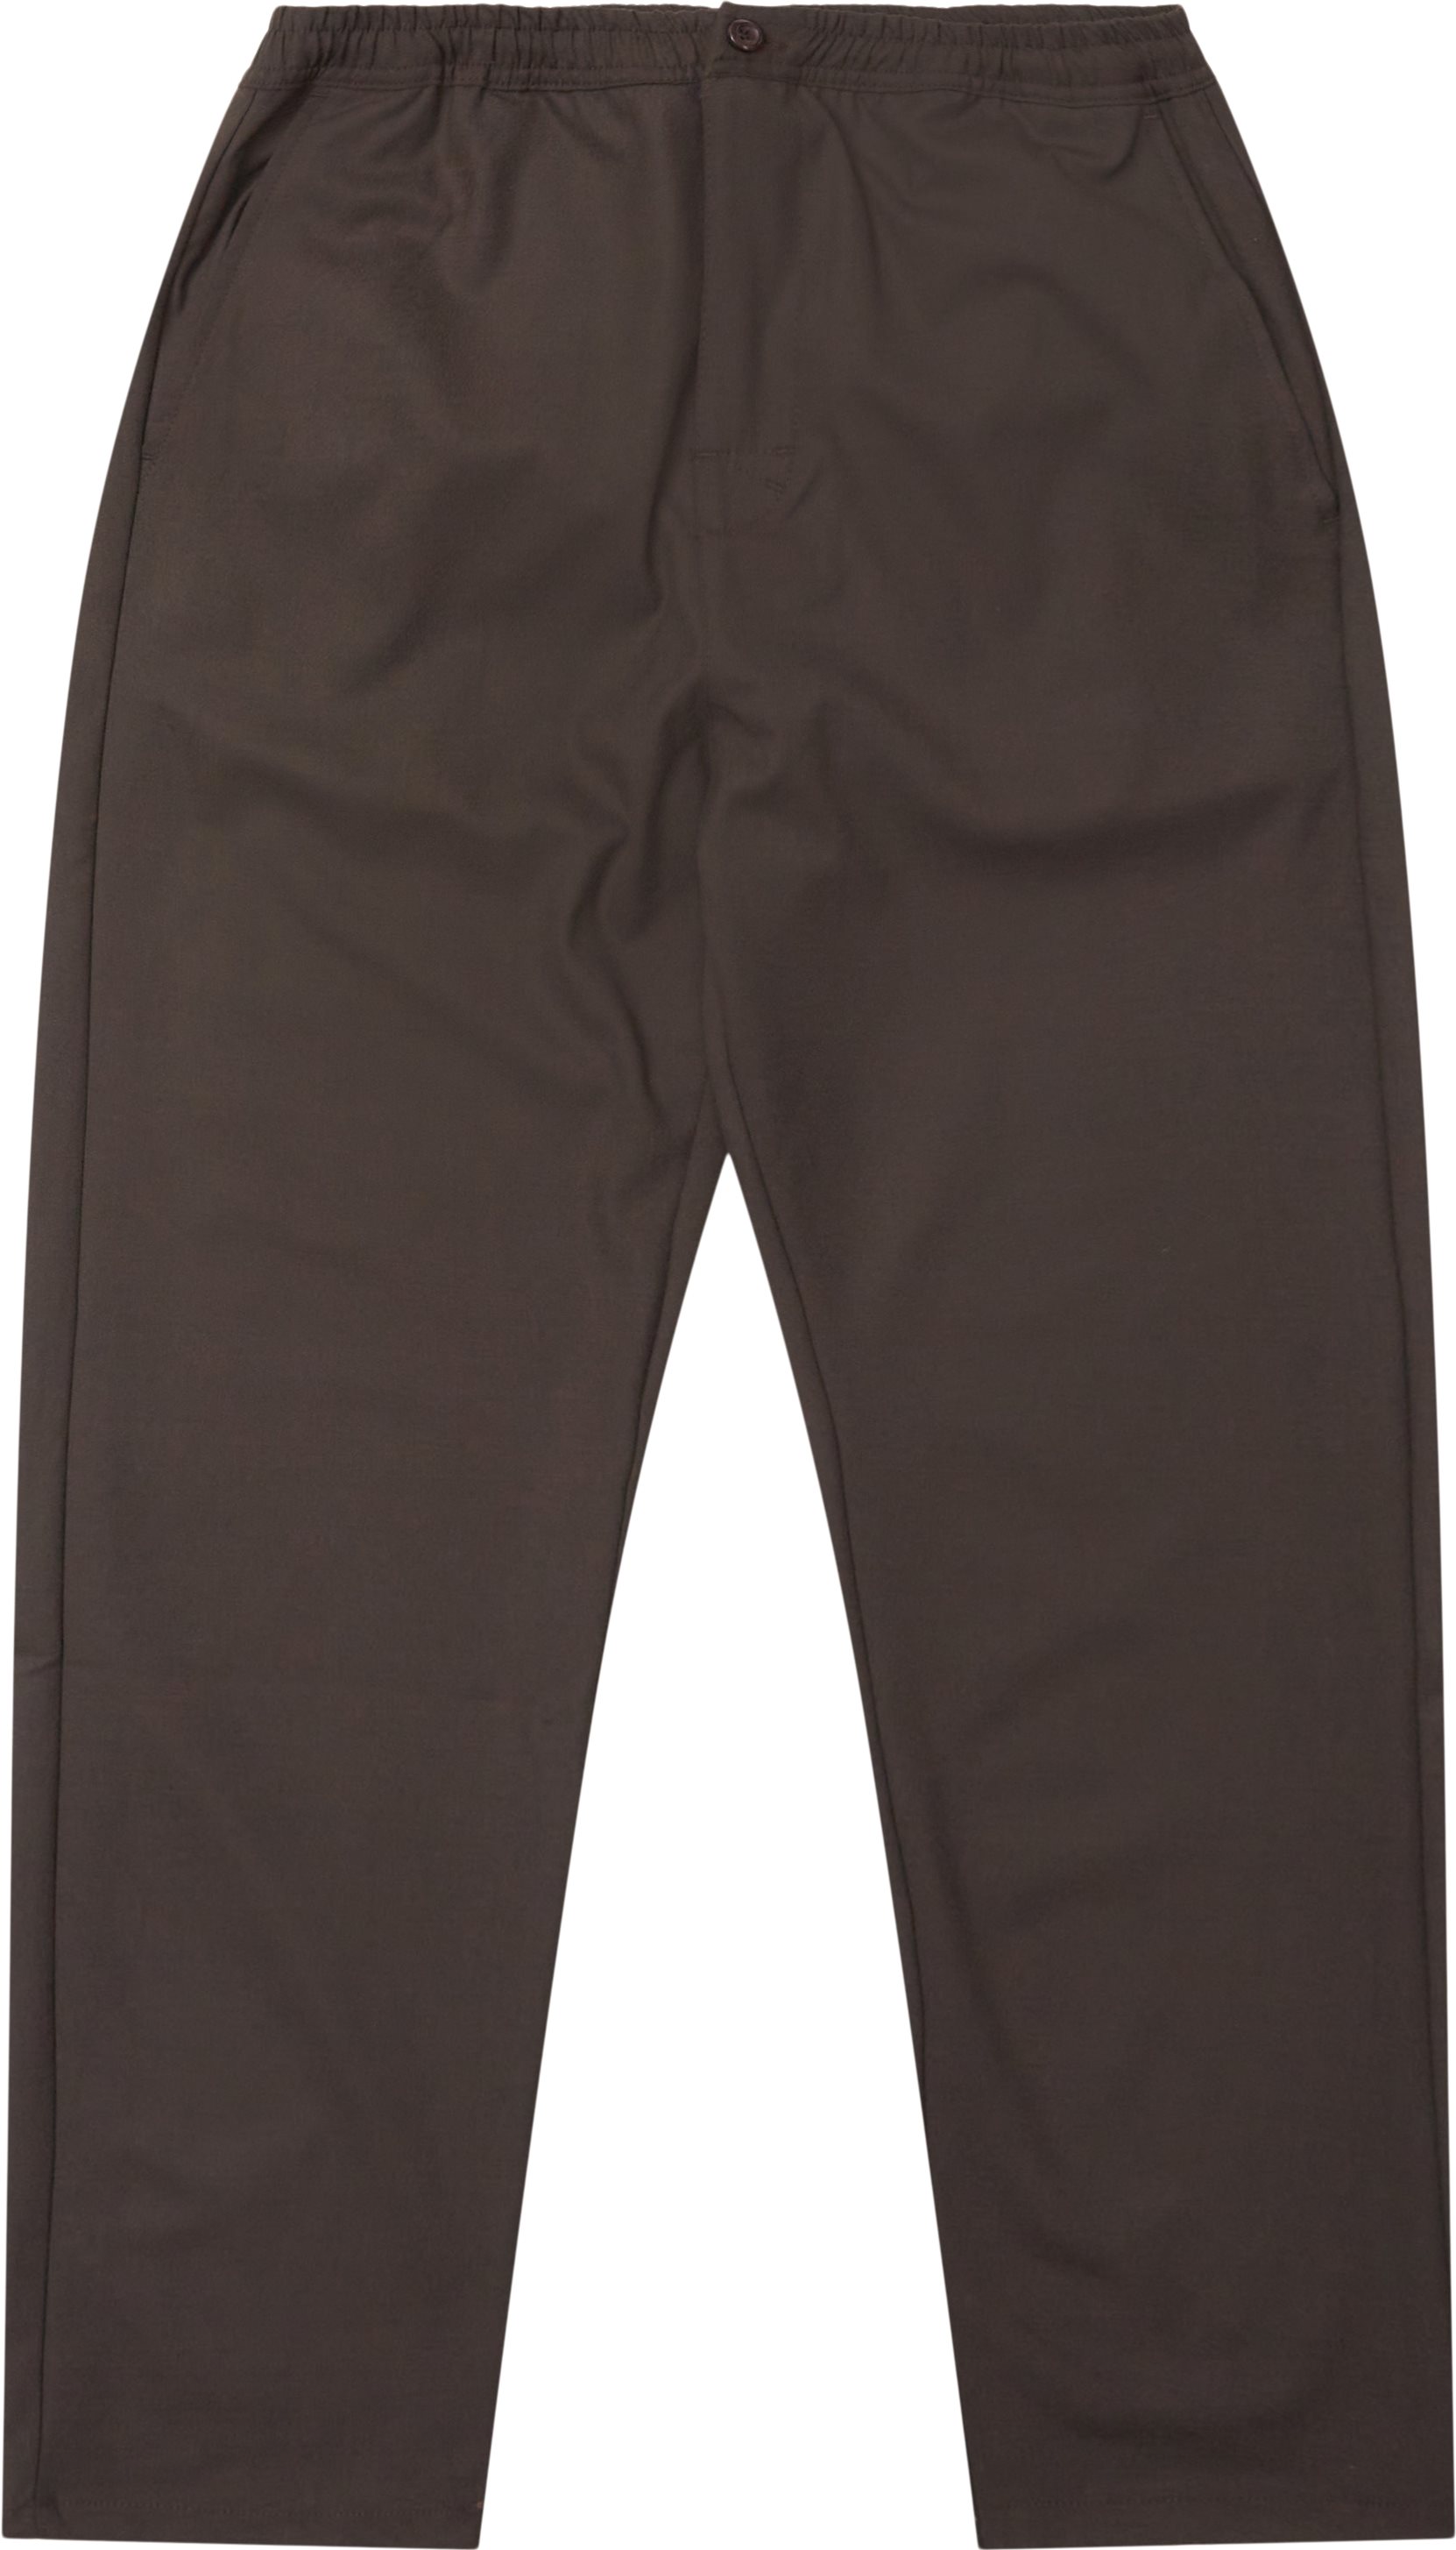 Utah Pants - Trousers - Regular fit - Brown